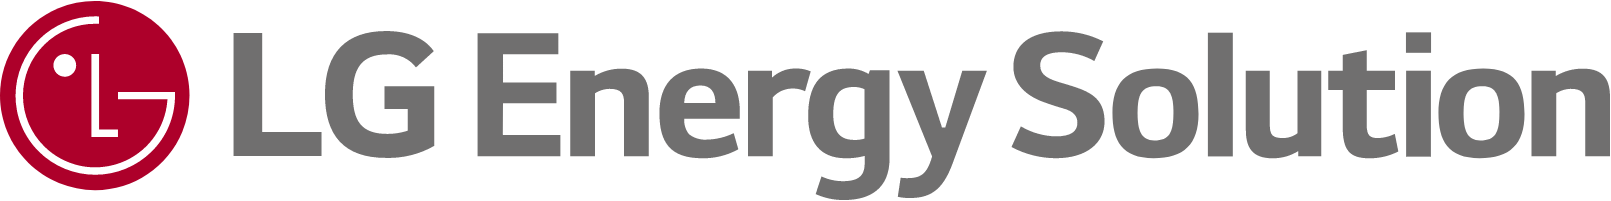 Brand: LG Energy